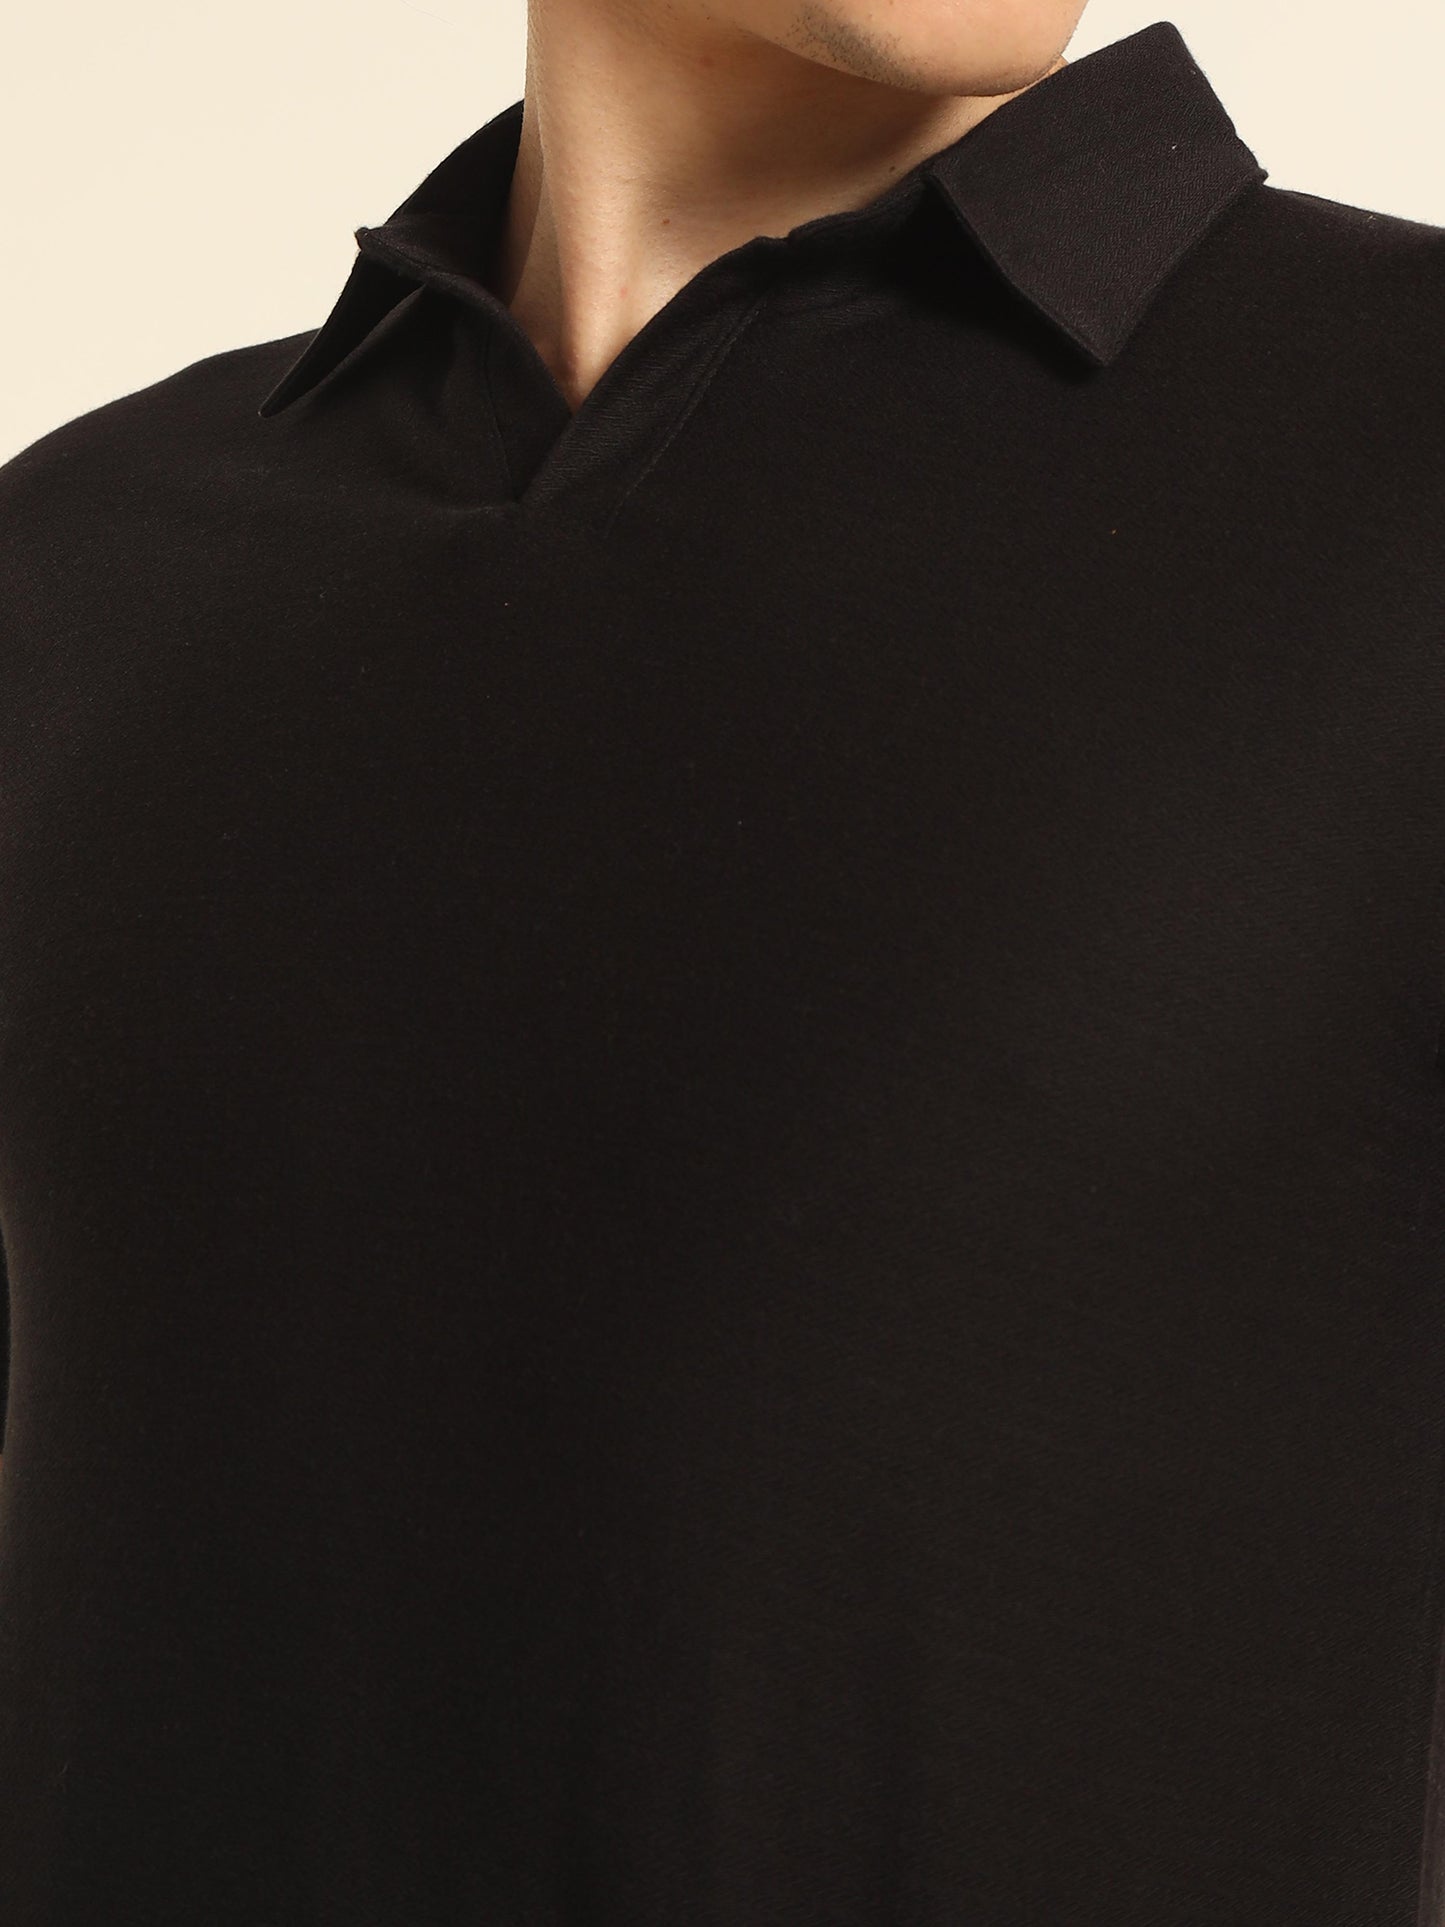 Black Polo T Shirt For Men